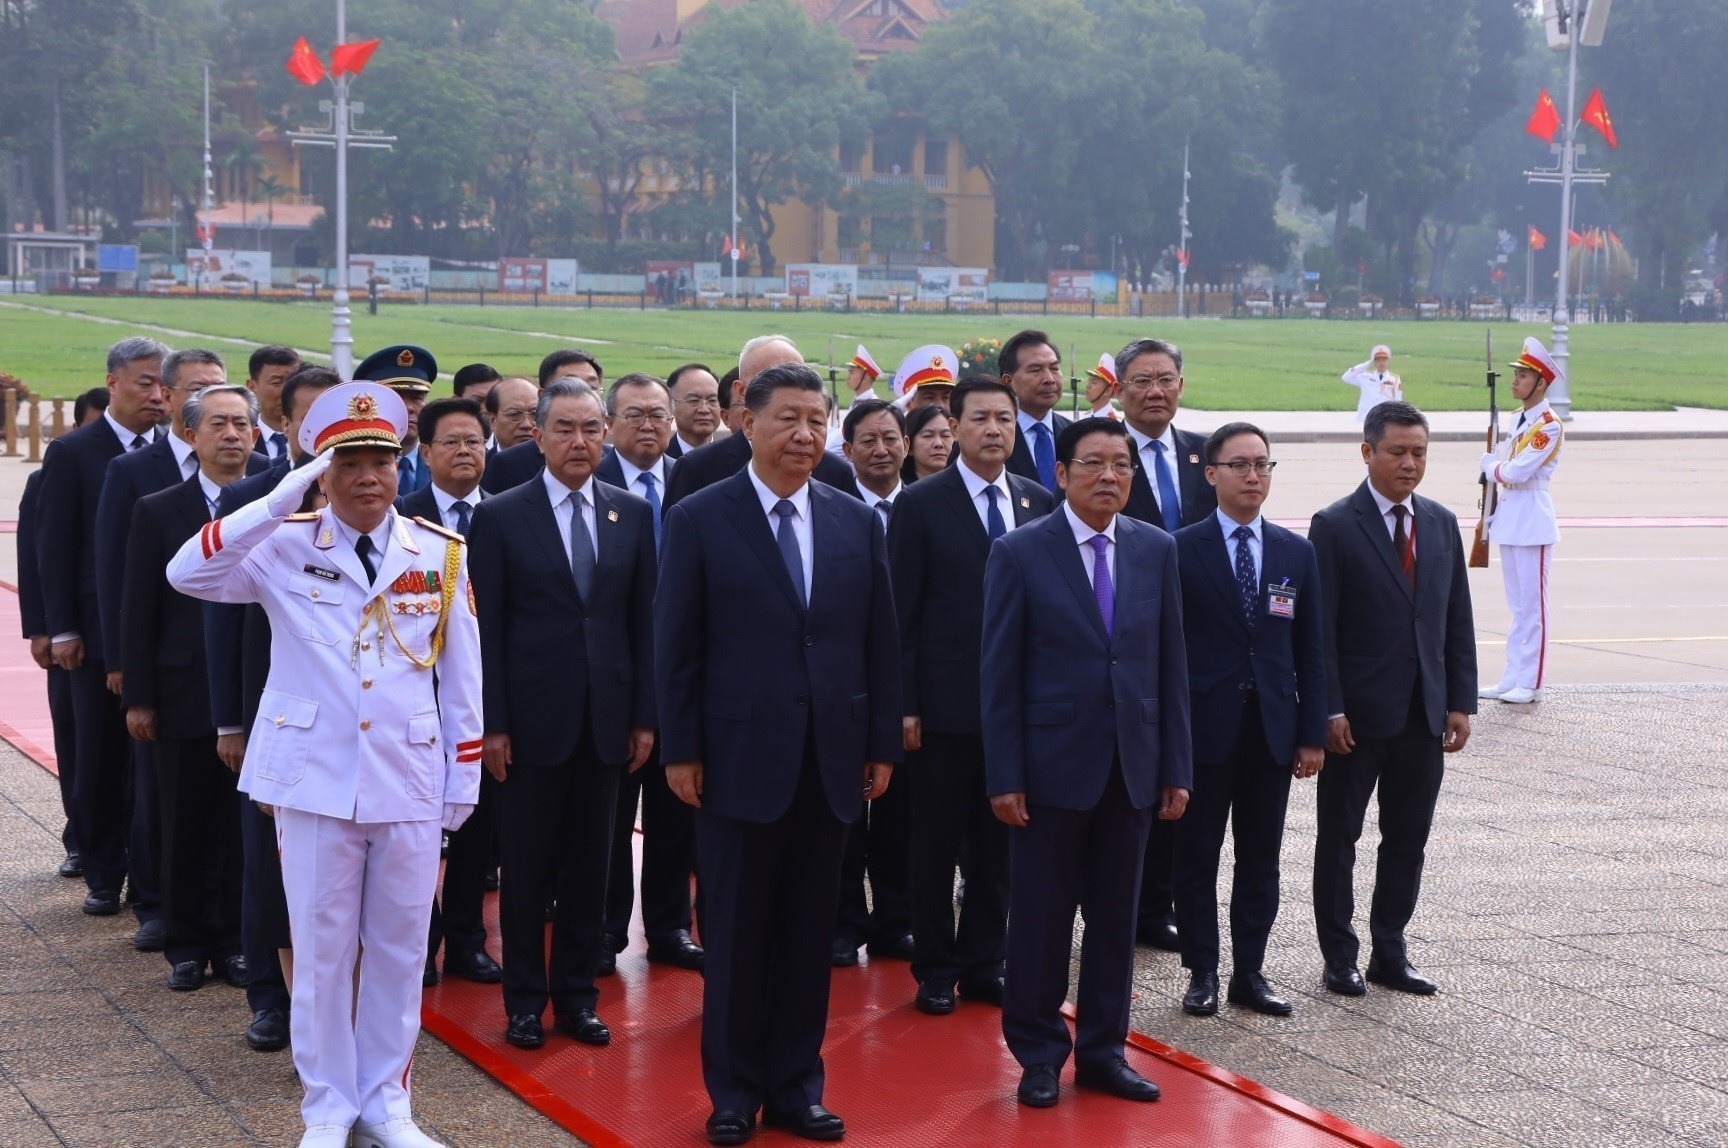 Tổng bí thư, Chủ tịch nước Tập Cận Bình vào Lăng viếng Chủ tịch Hồ Chí Minh - Ảnh 5.